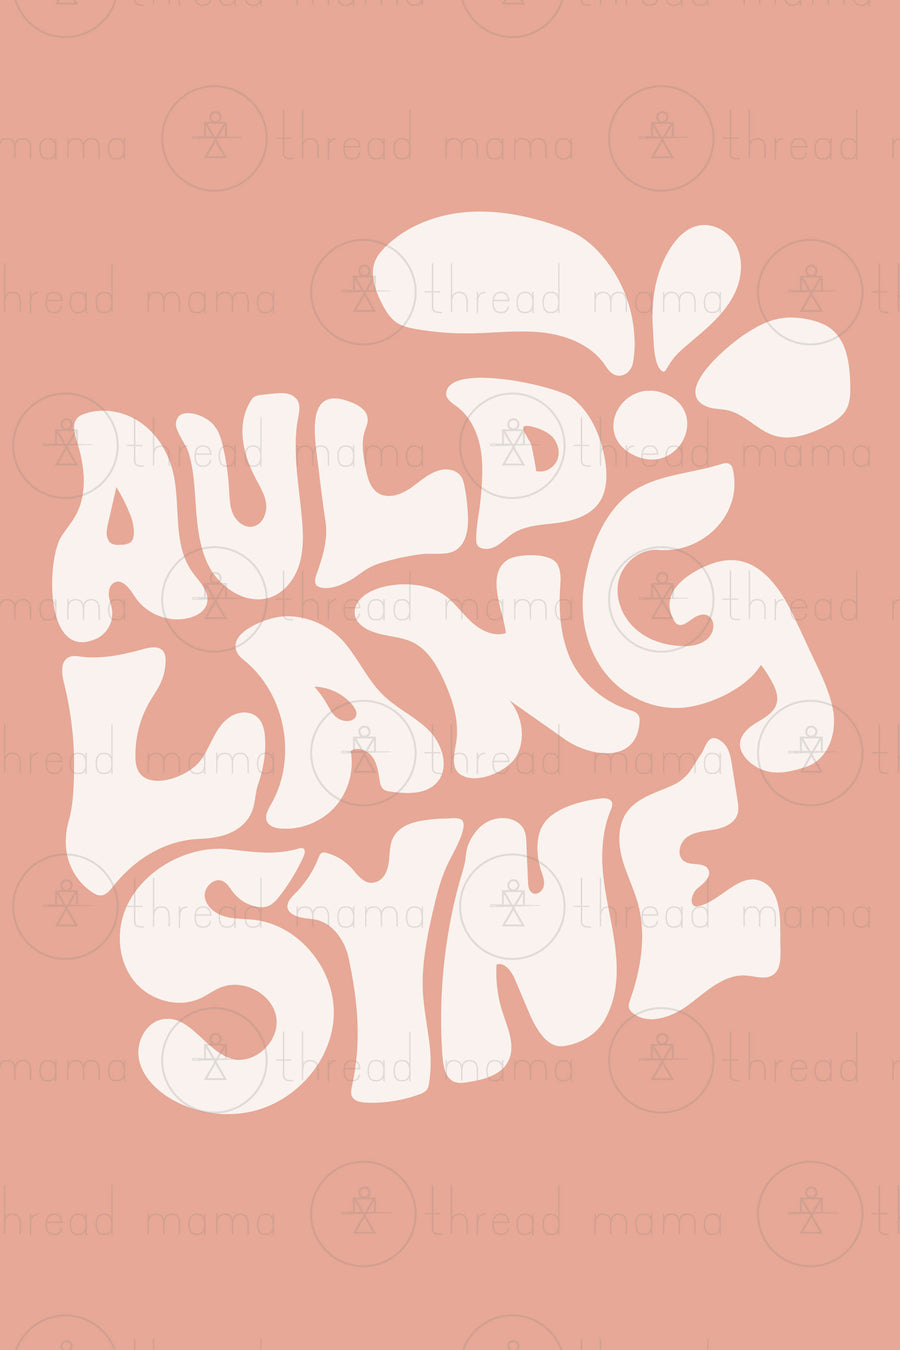 Auld Lang Syne - Set